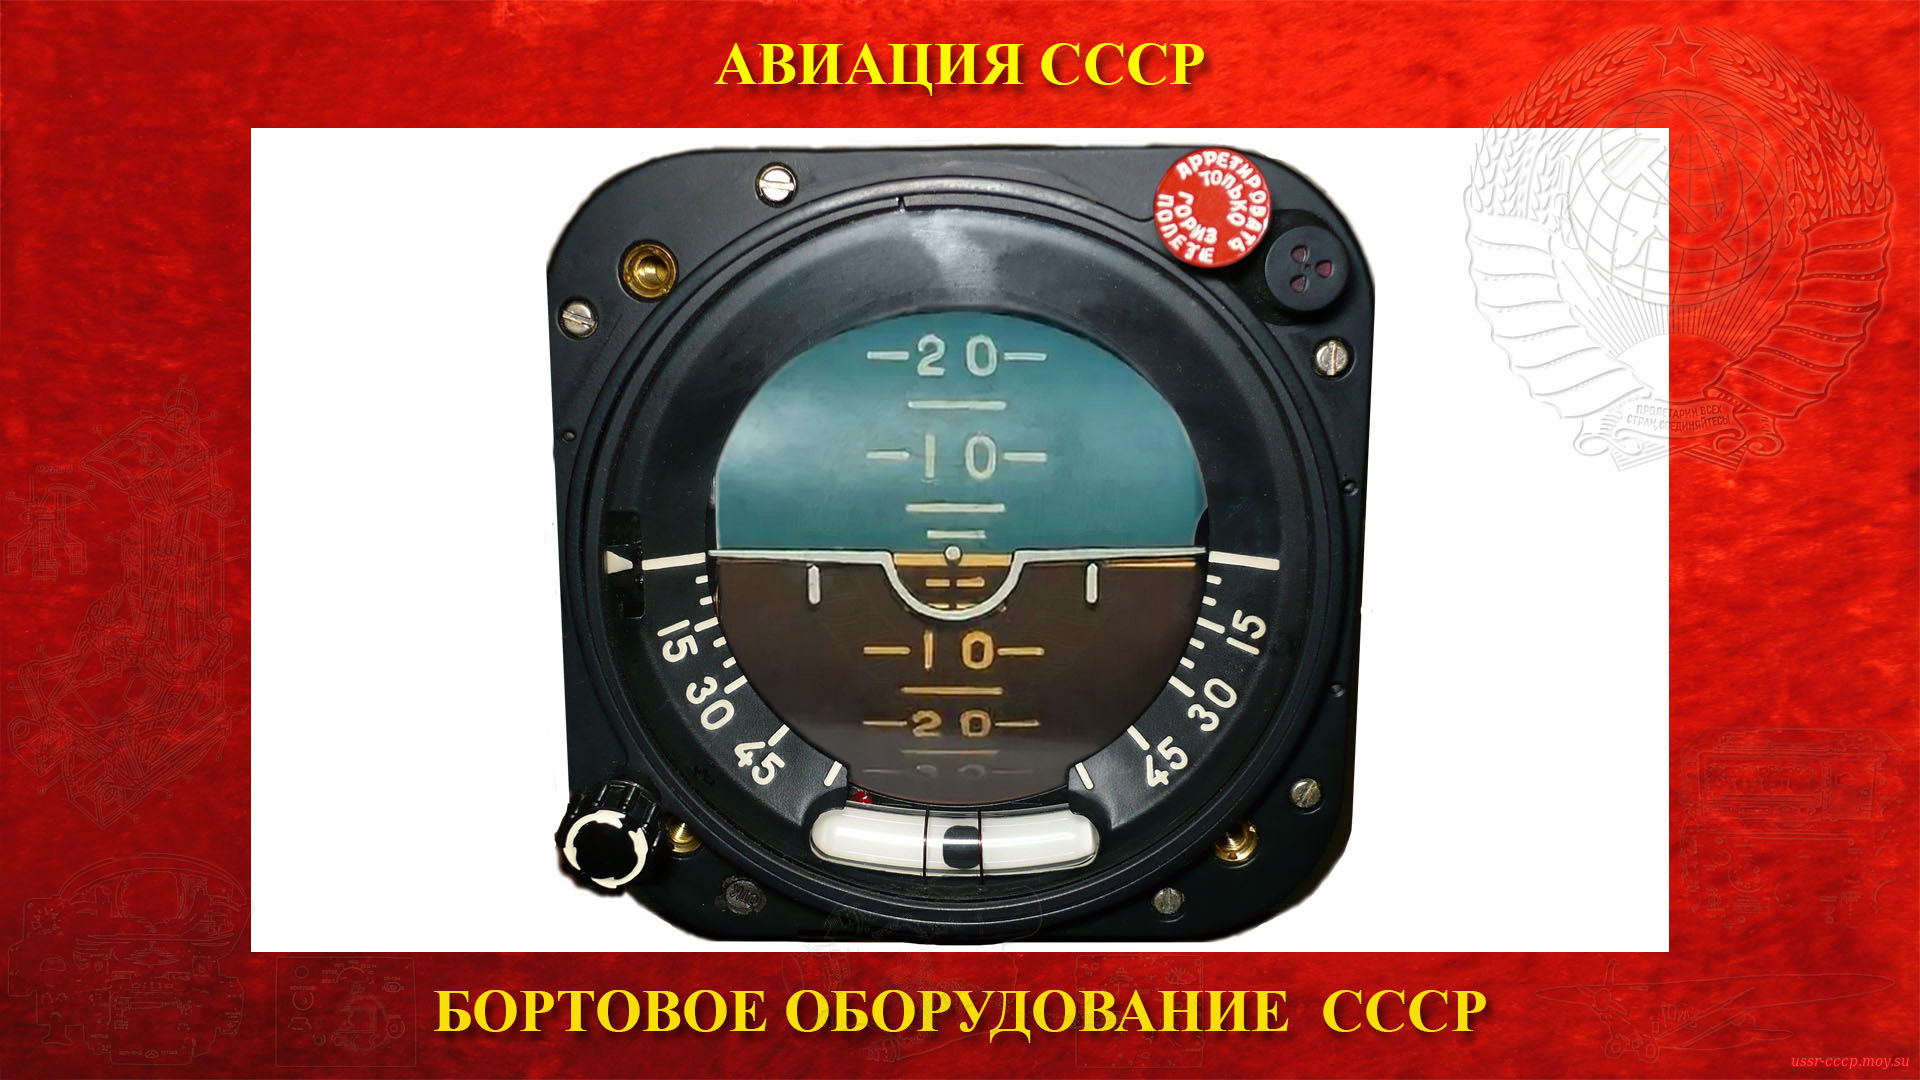 АГД-1 — Авиагоризонт дистанционный — Гироскопический прибор СССР